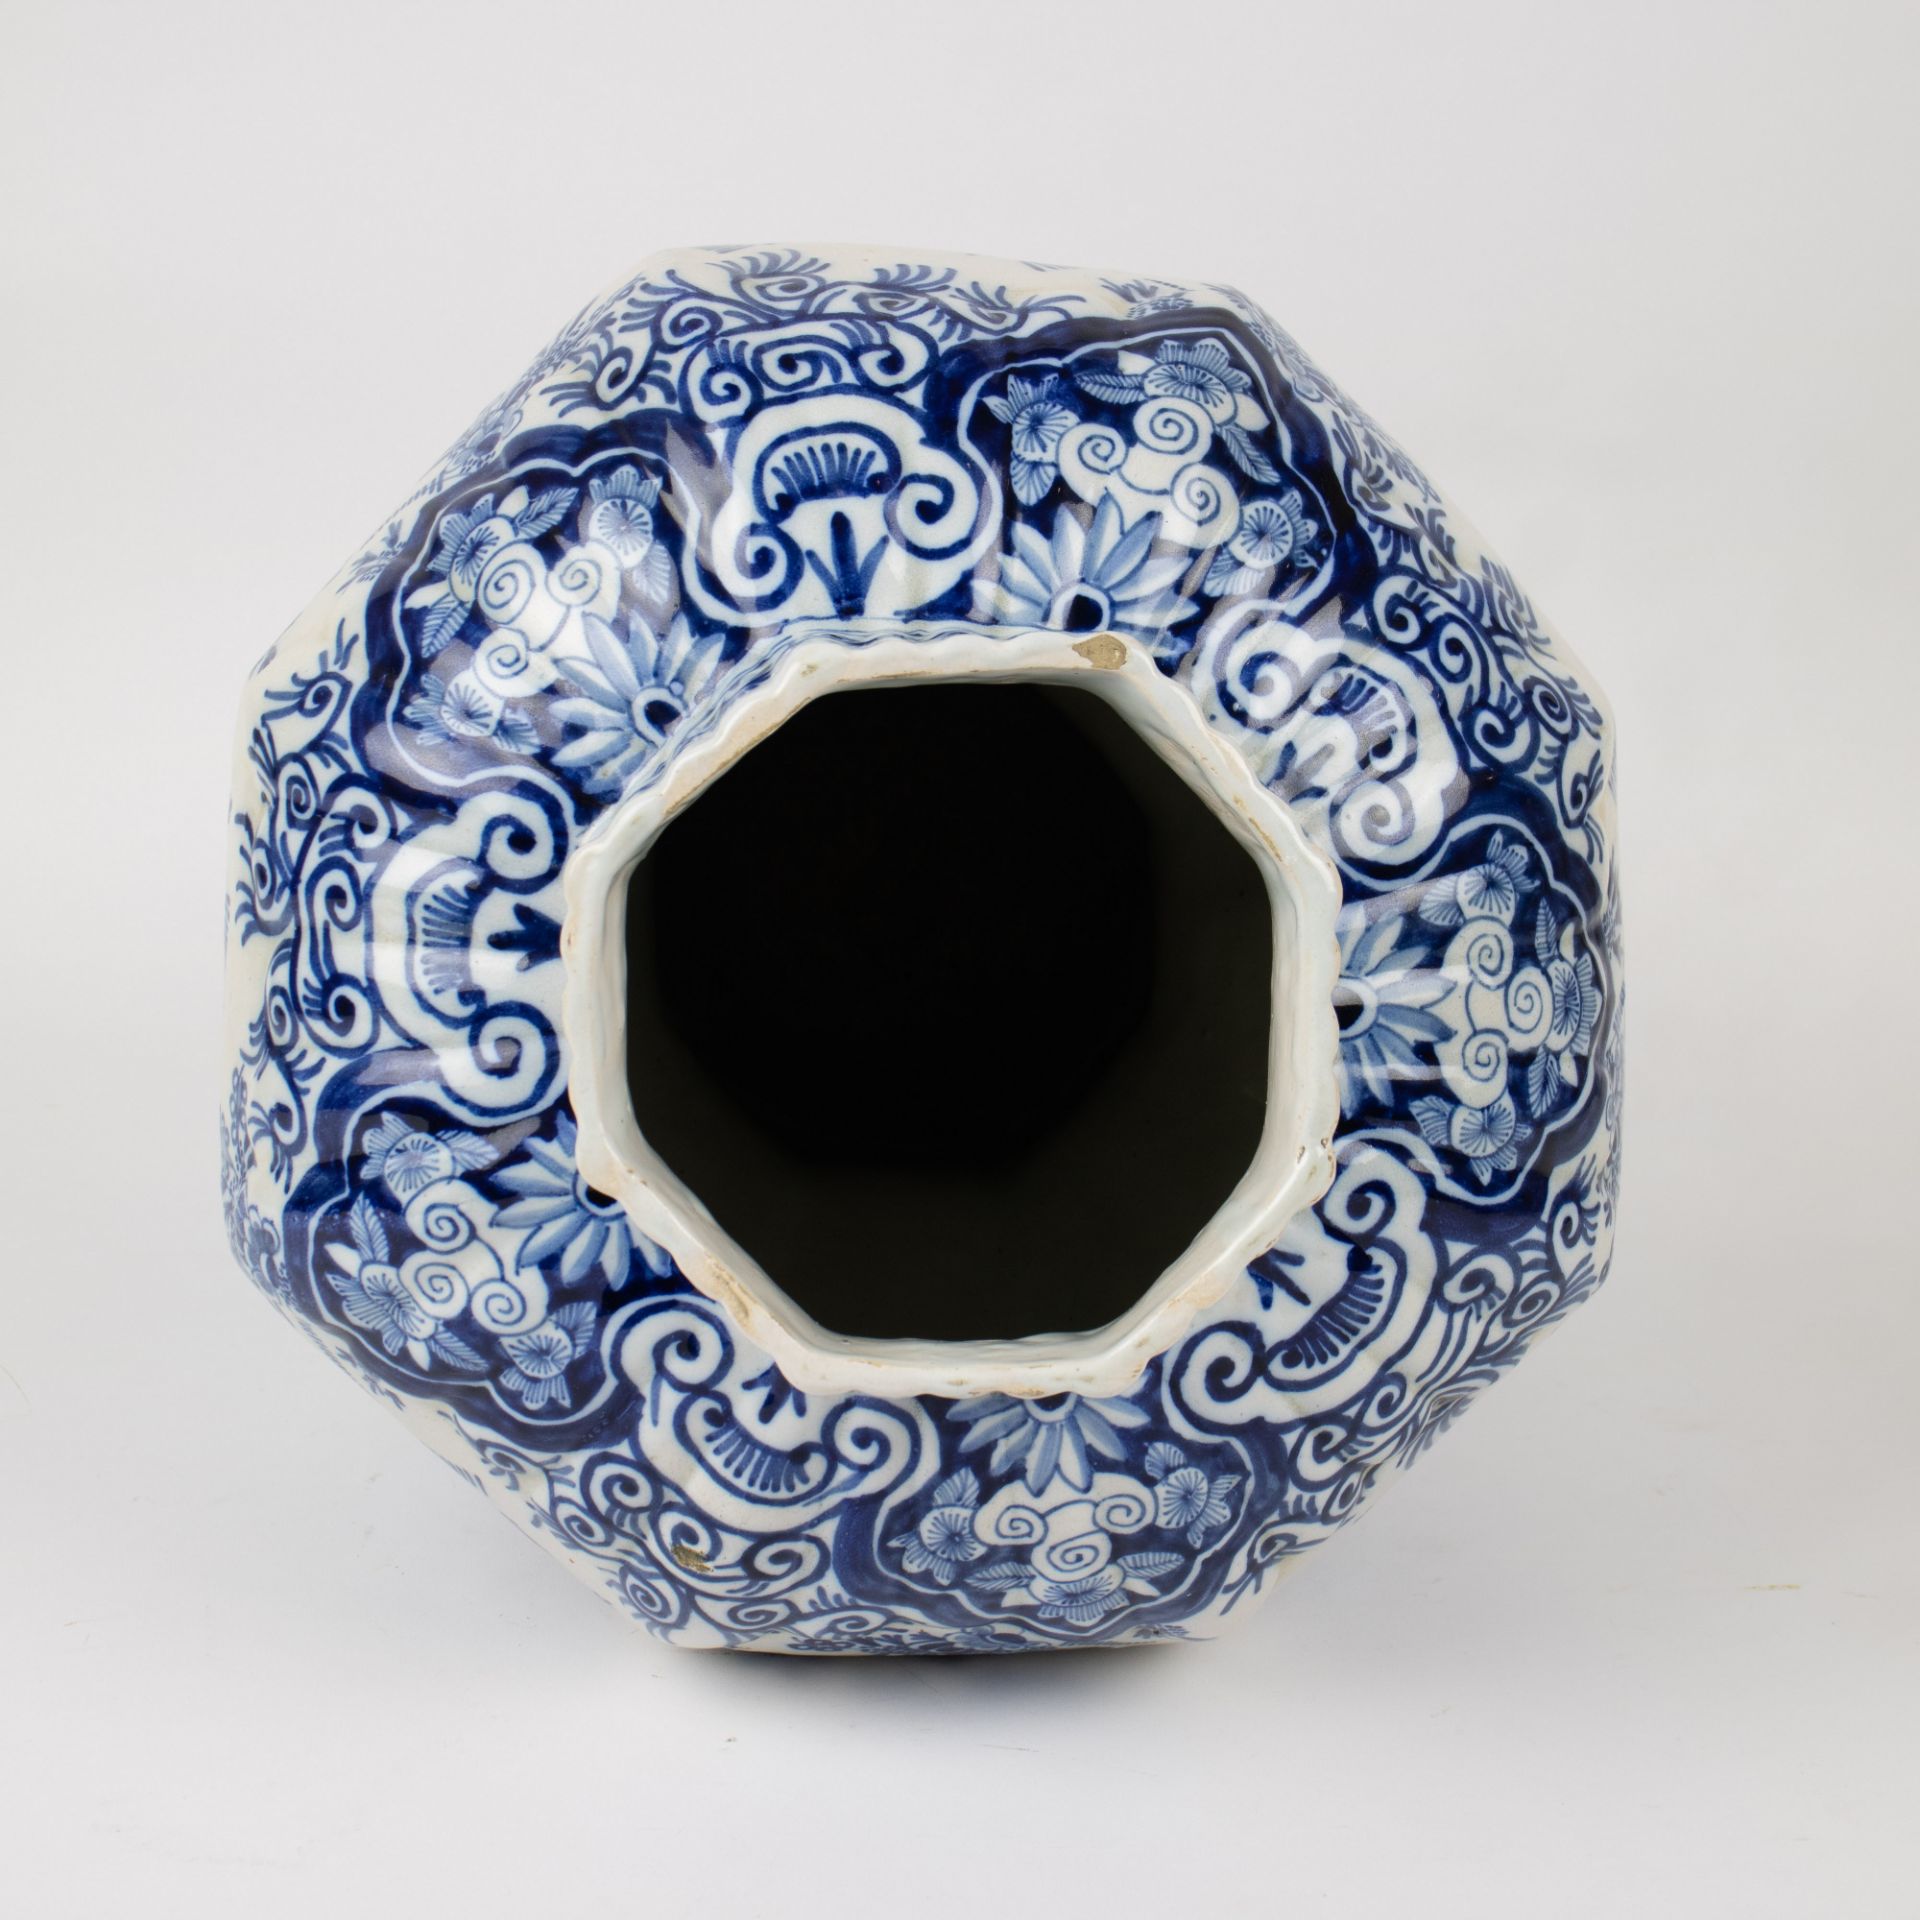 Octagonal baluster-shaped Delft vase - Image 6 of 9